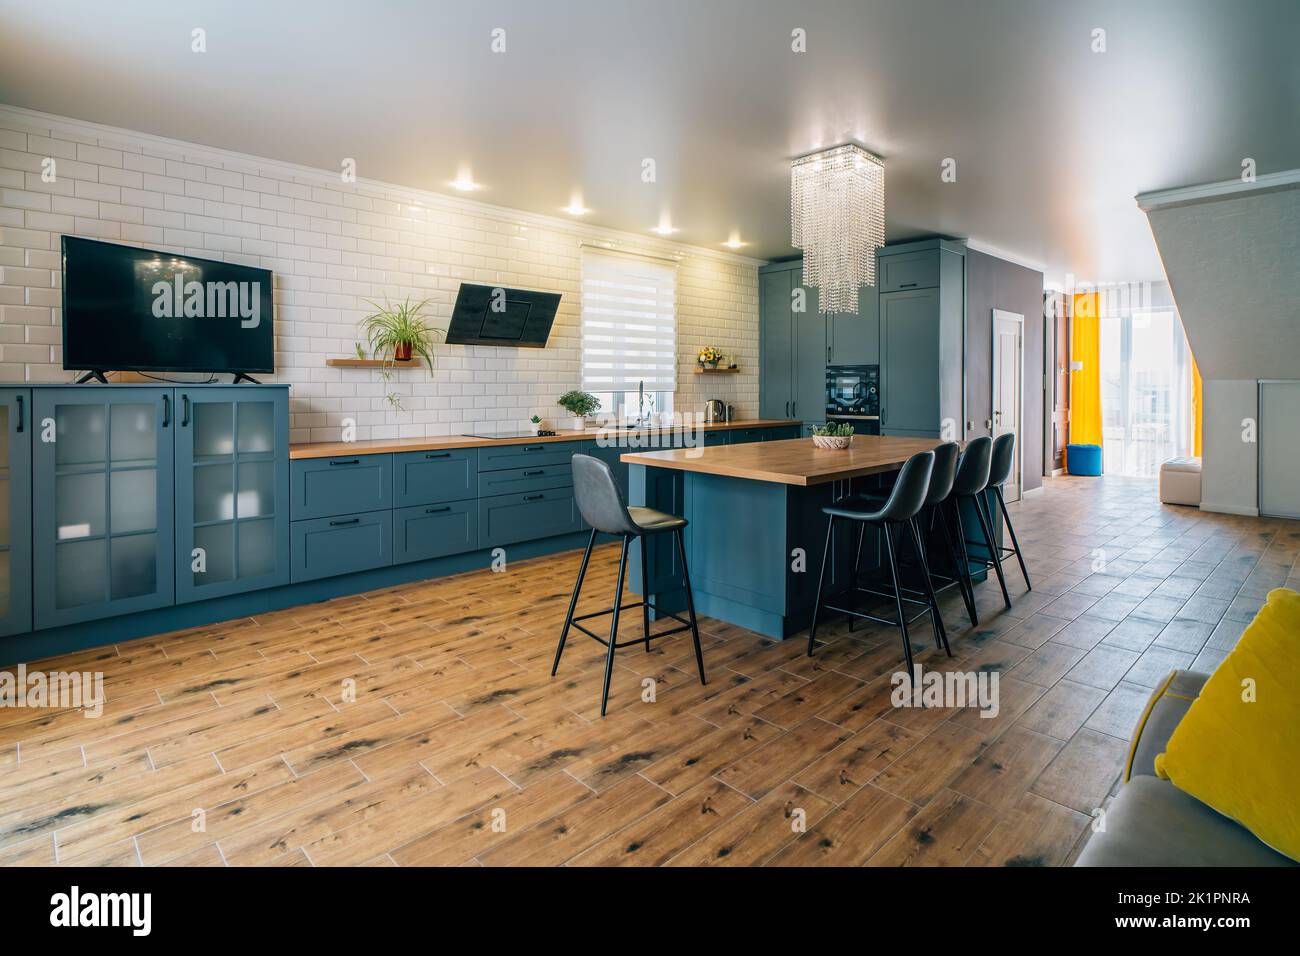 Moderno salón cocina cocina fotografías e imágenes de alta resolución -  Página 2 - Alamy